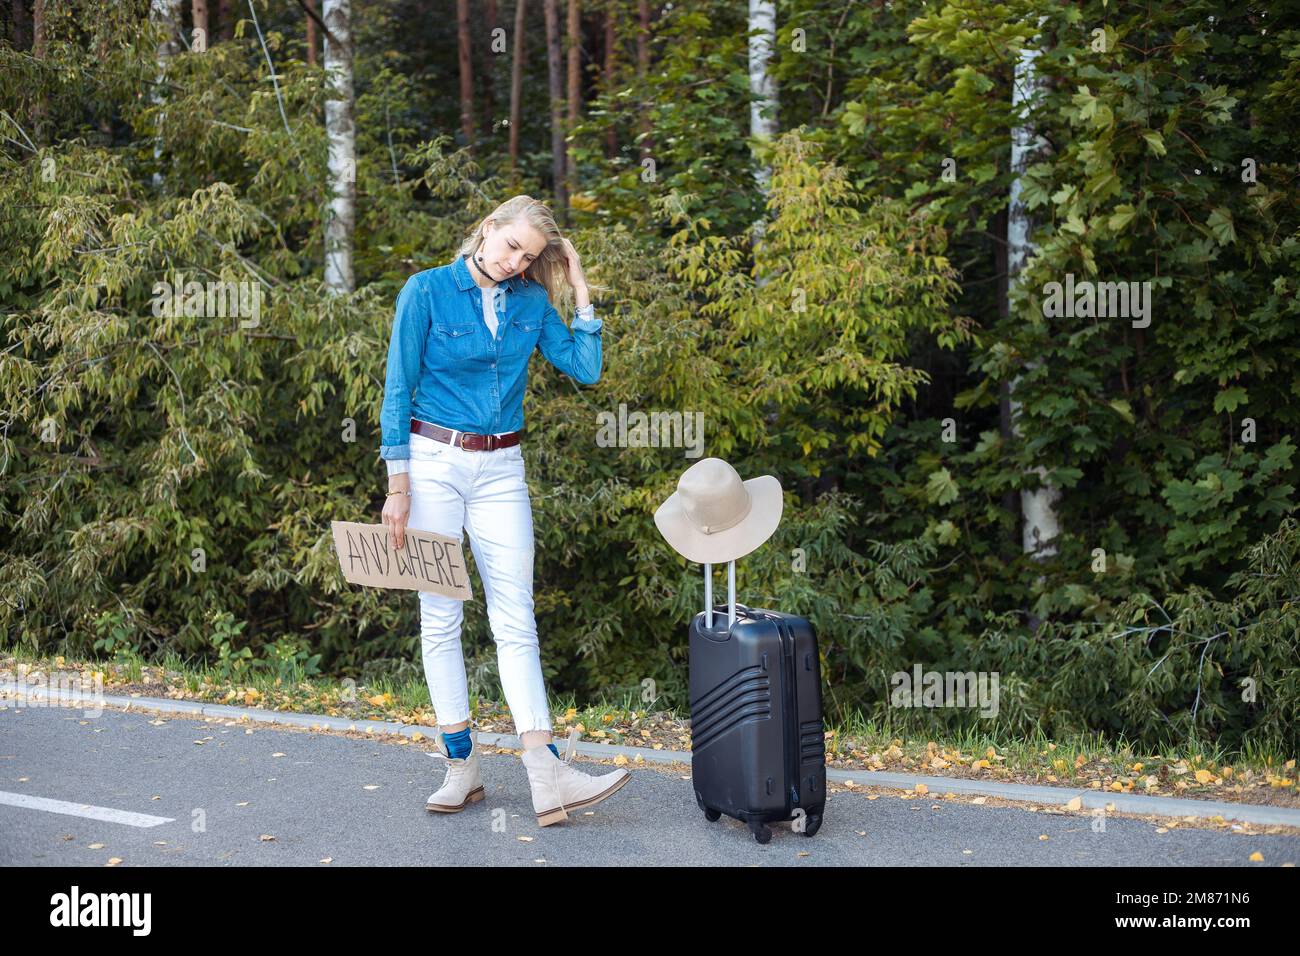 Eine junge Frau wartet im Wald am Auto vorbei und steht mit Koffer und Pappposter am Straßenrand. Reisender fliehen aus der Stadt, um überall hin zu kommen. Auf Reisen Stockfoto